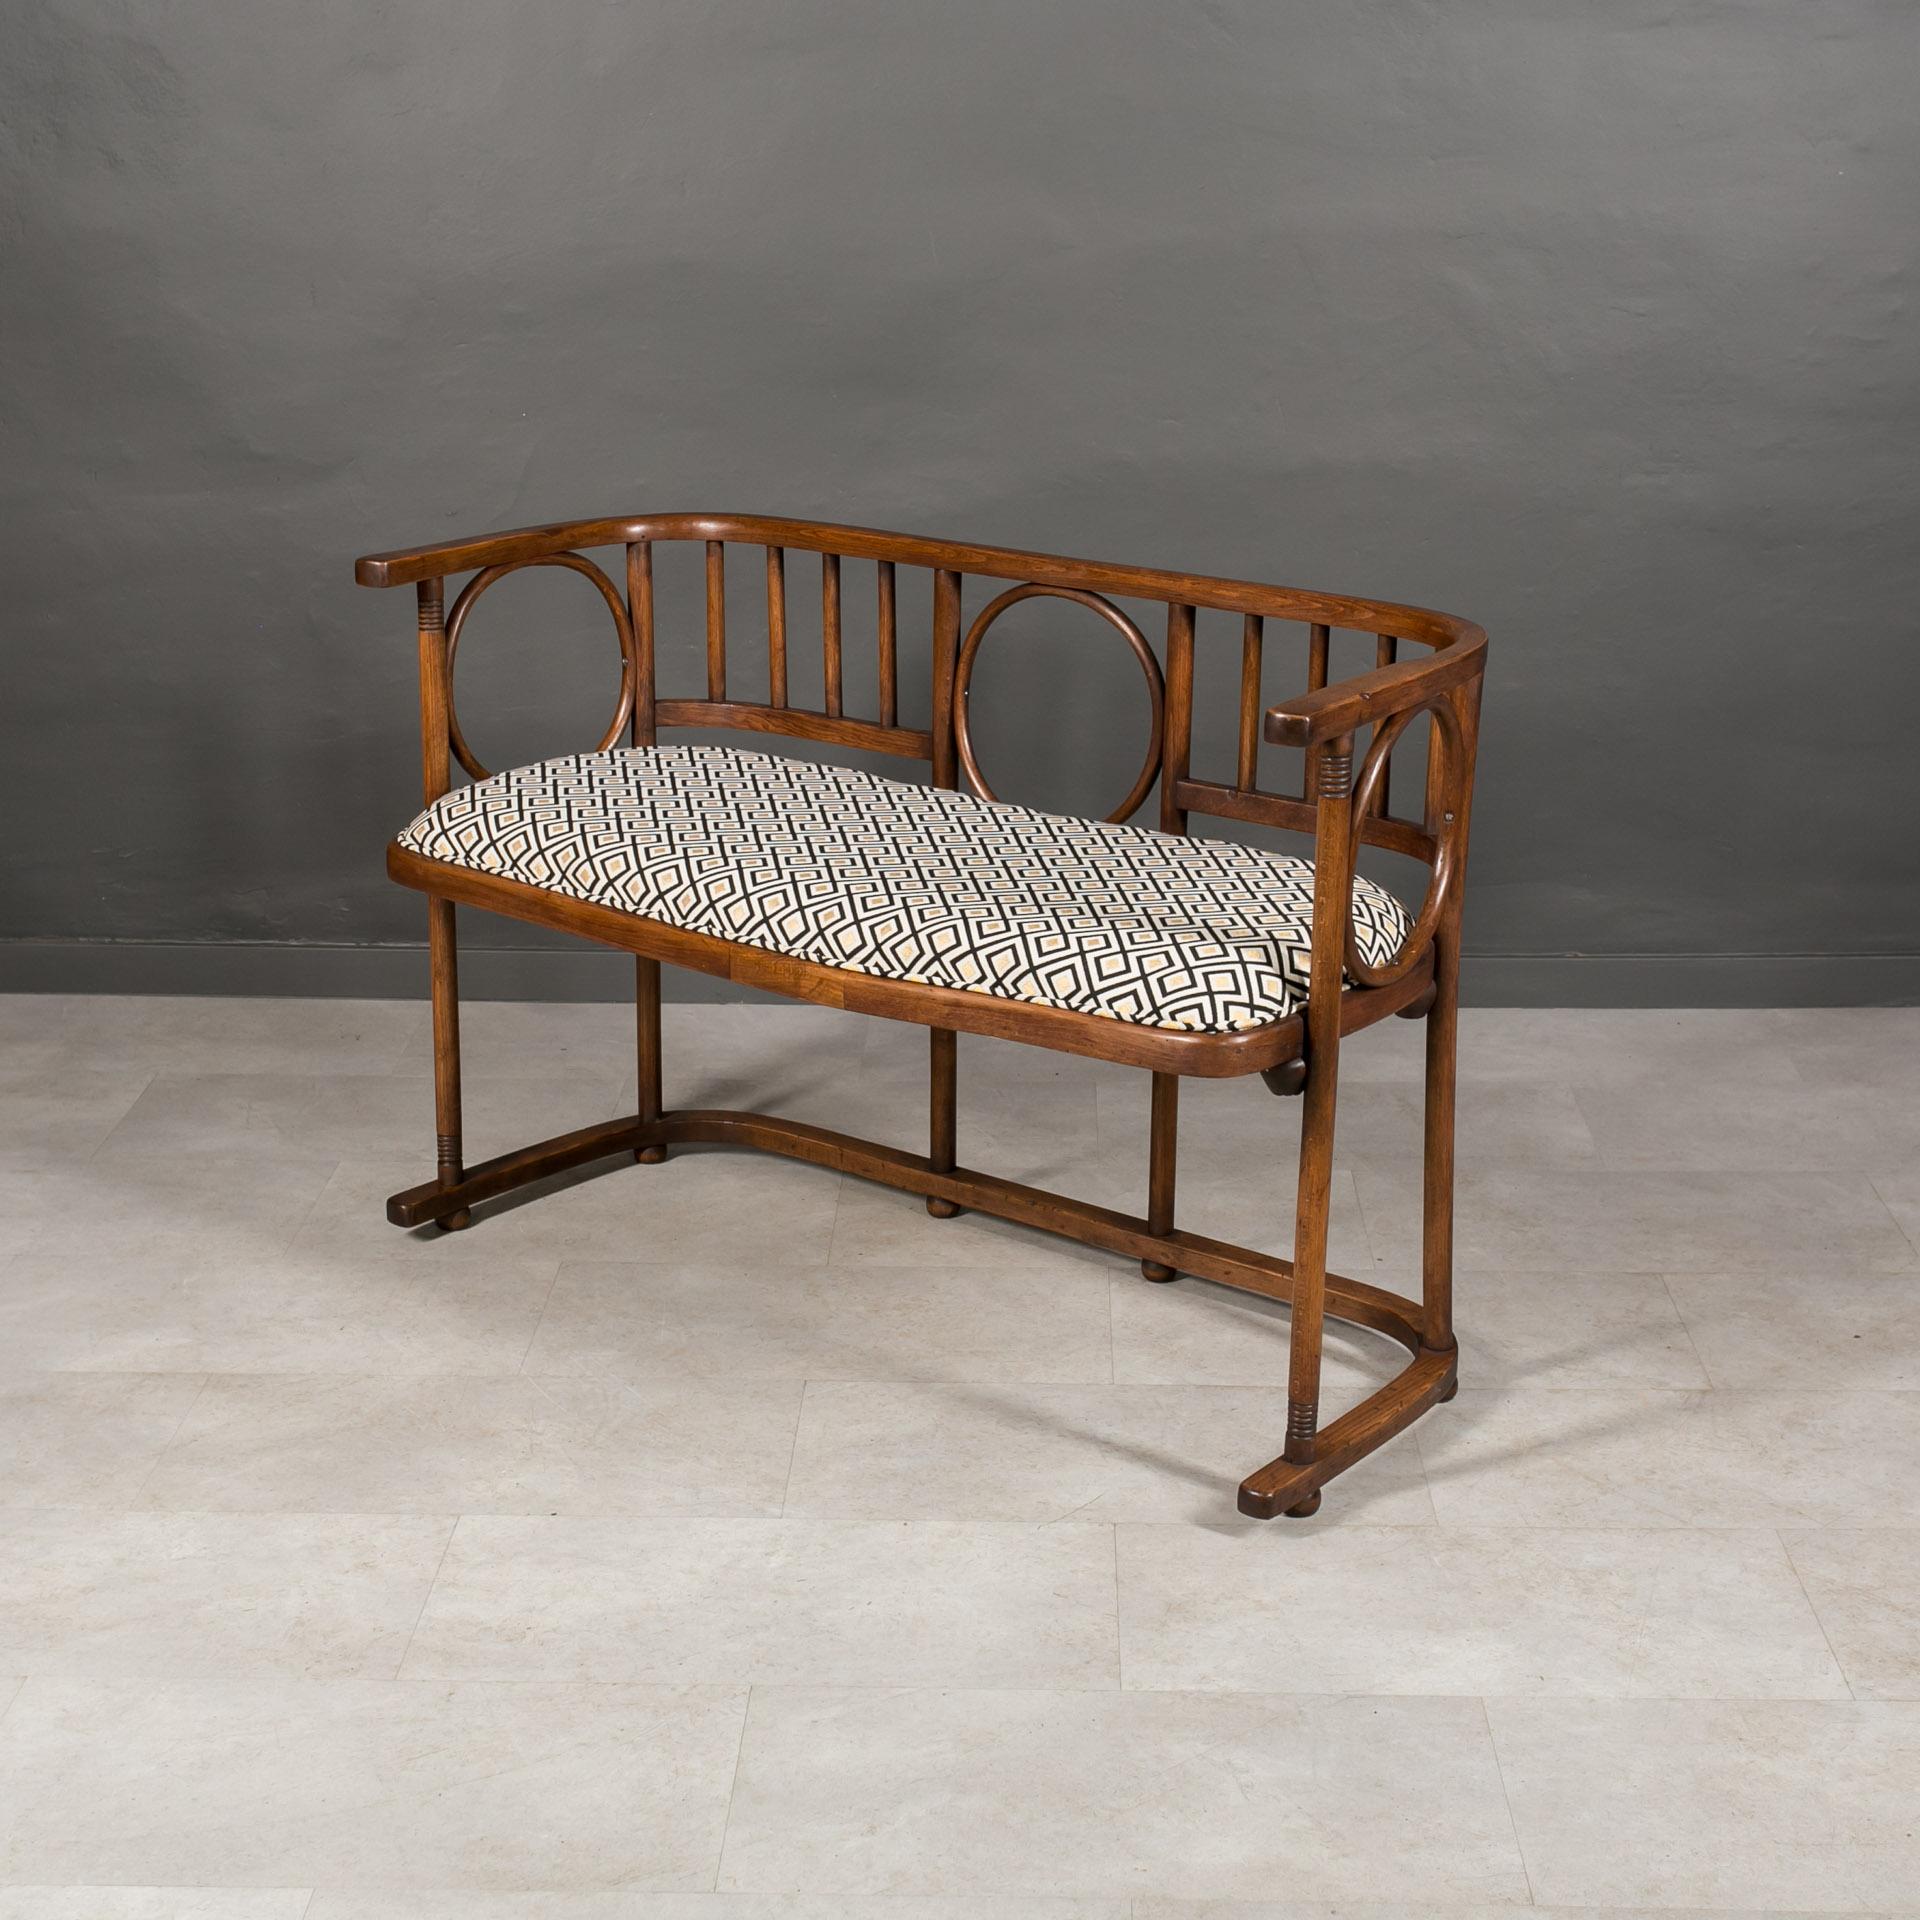 Diese außergewöhnliche Sitzbank aus Bugholz stammt aus dem frühen 20. Jahrhundert und wird Josef Hoffmann zugeschrieben, der sie für Thonet - Mundus entworfen hat. Dieses Modell erschien 1907 im Katalog und wurde dann mit dem häufigeren Modell von